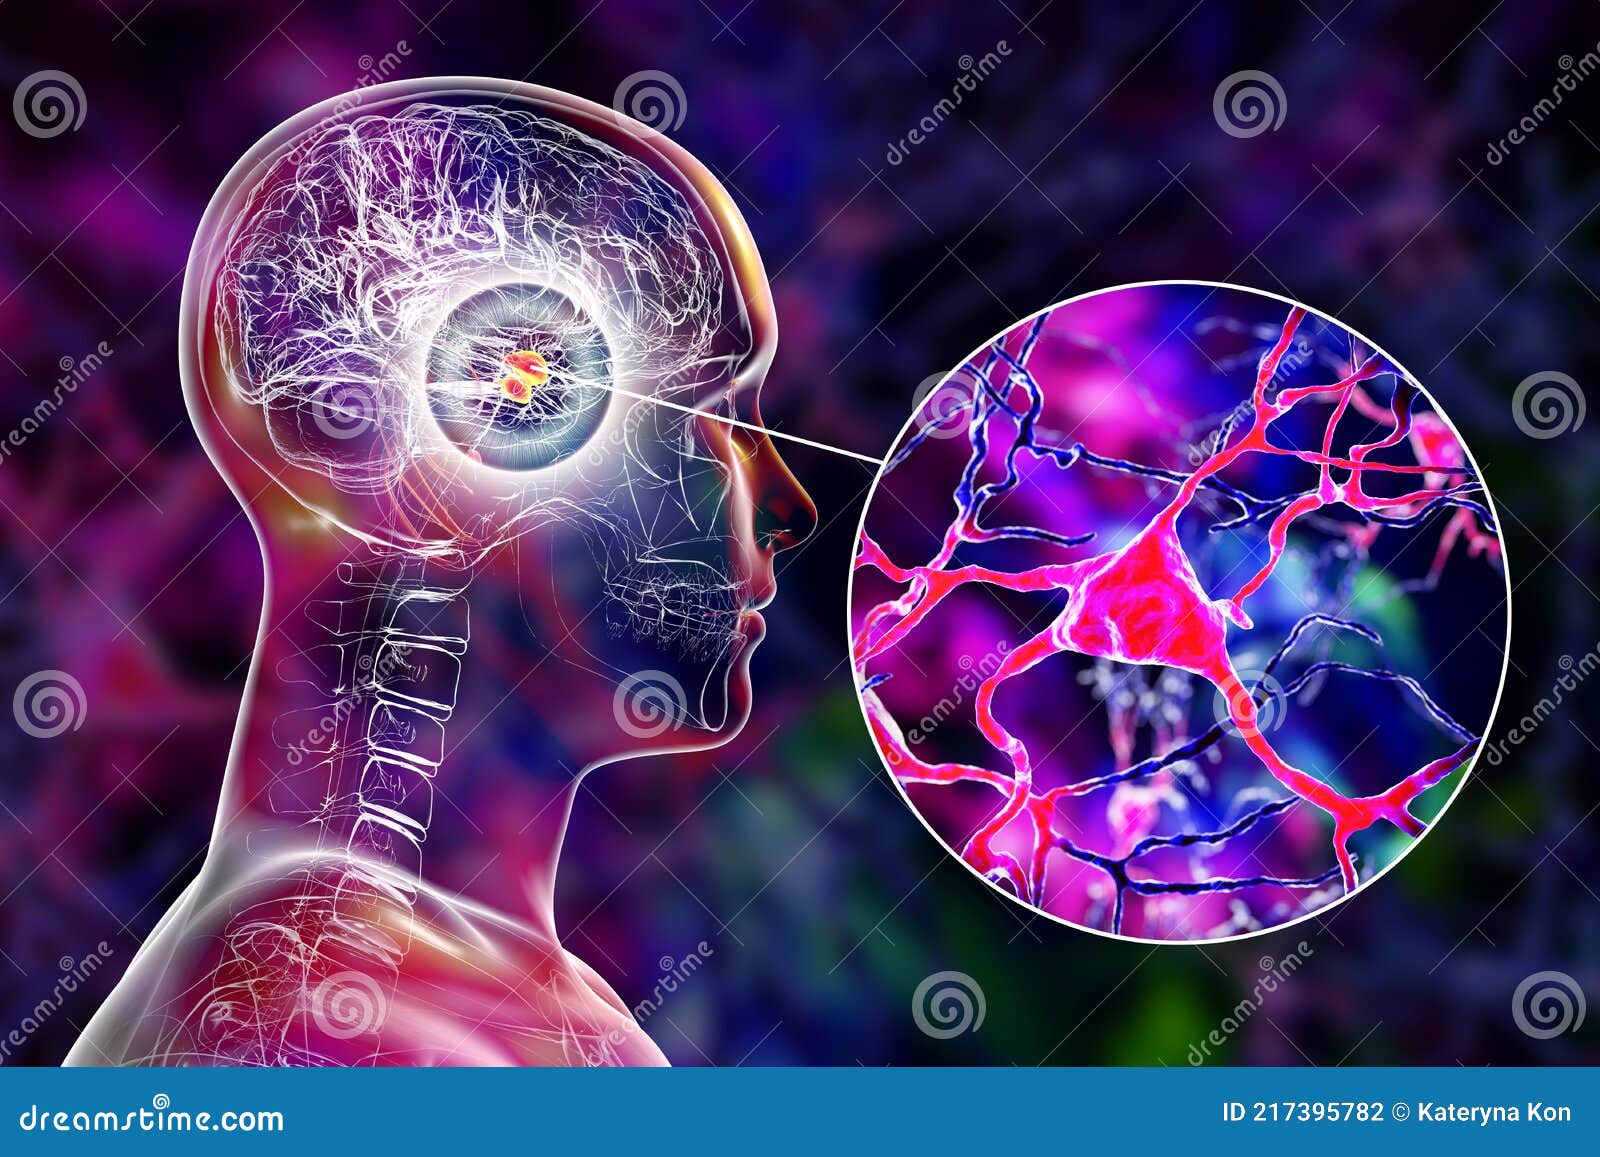 amygdala in the brain, and closeup view of amygdala neurons, 3d 